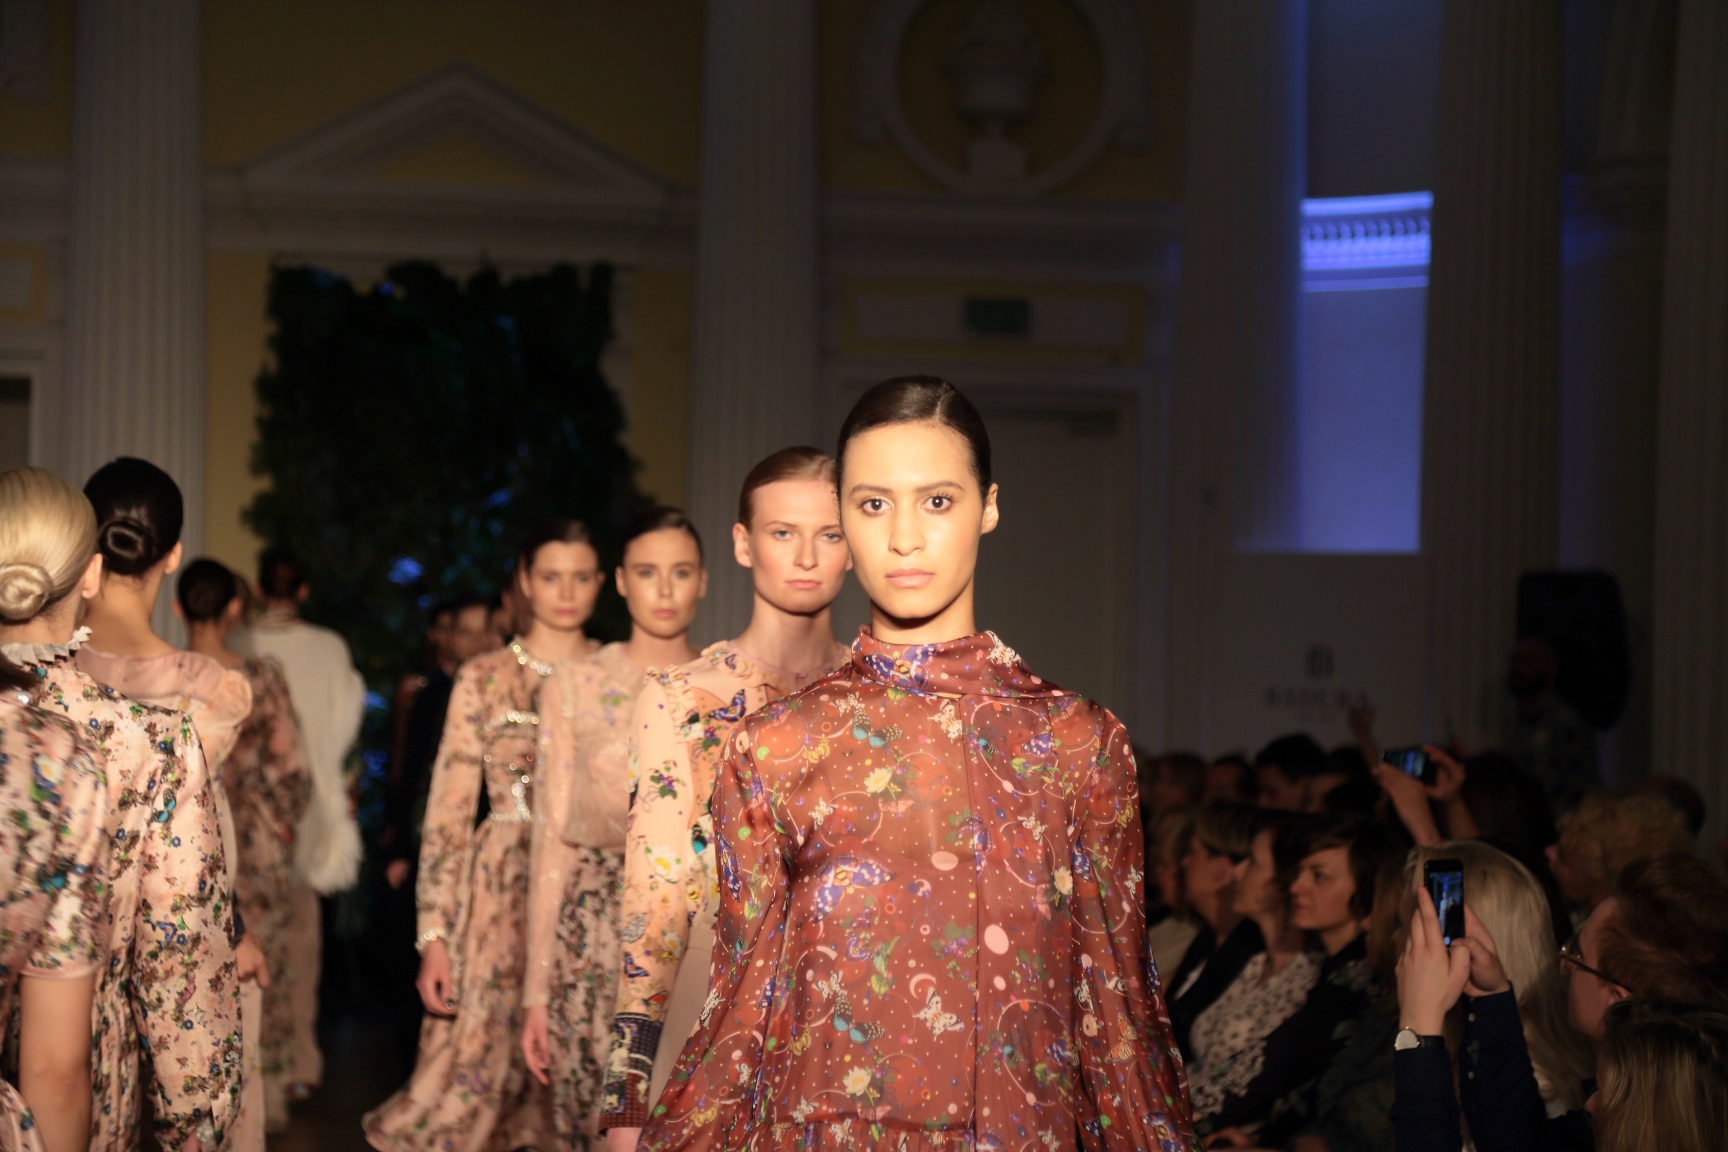 Włoska moda w Warszawie: pokaz kolekcji Gianni Versace by Alexandre Stefani